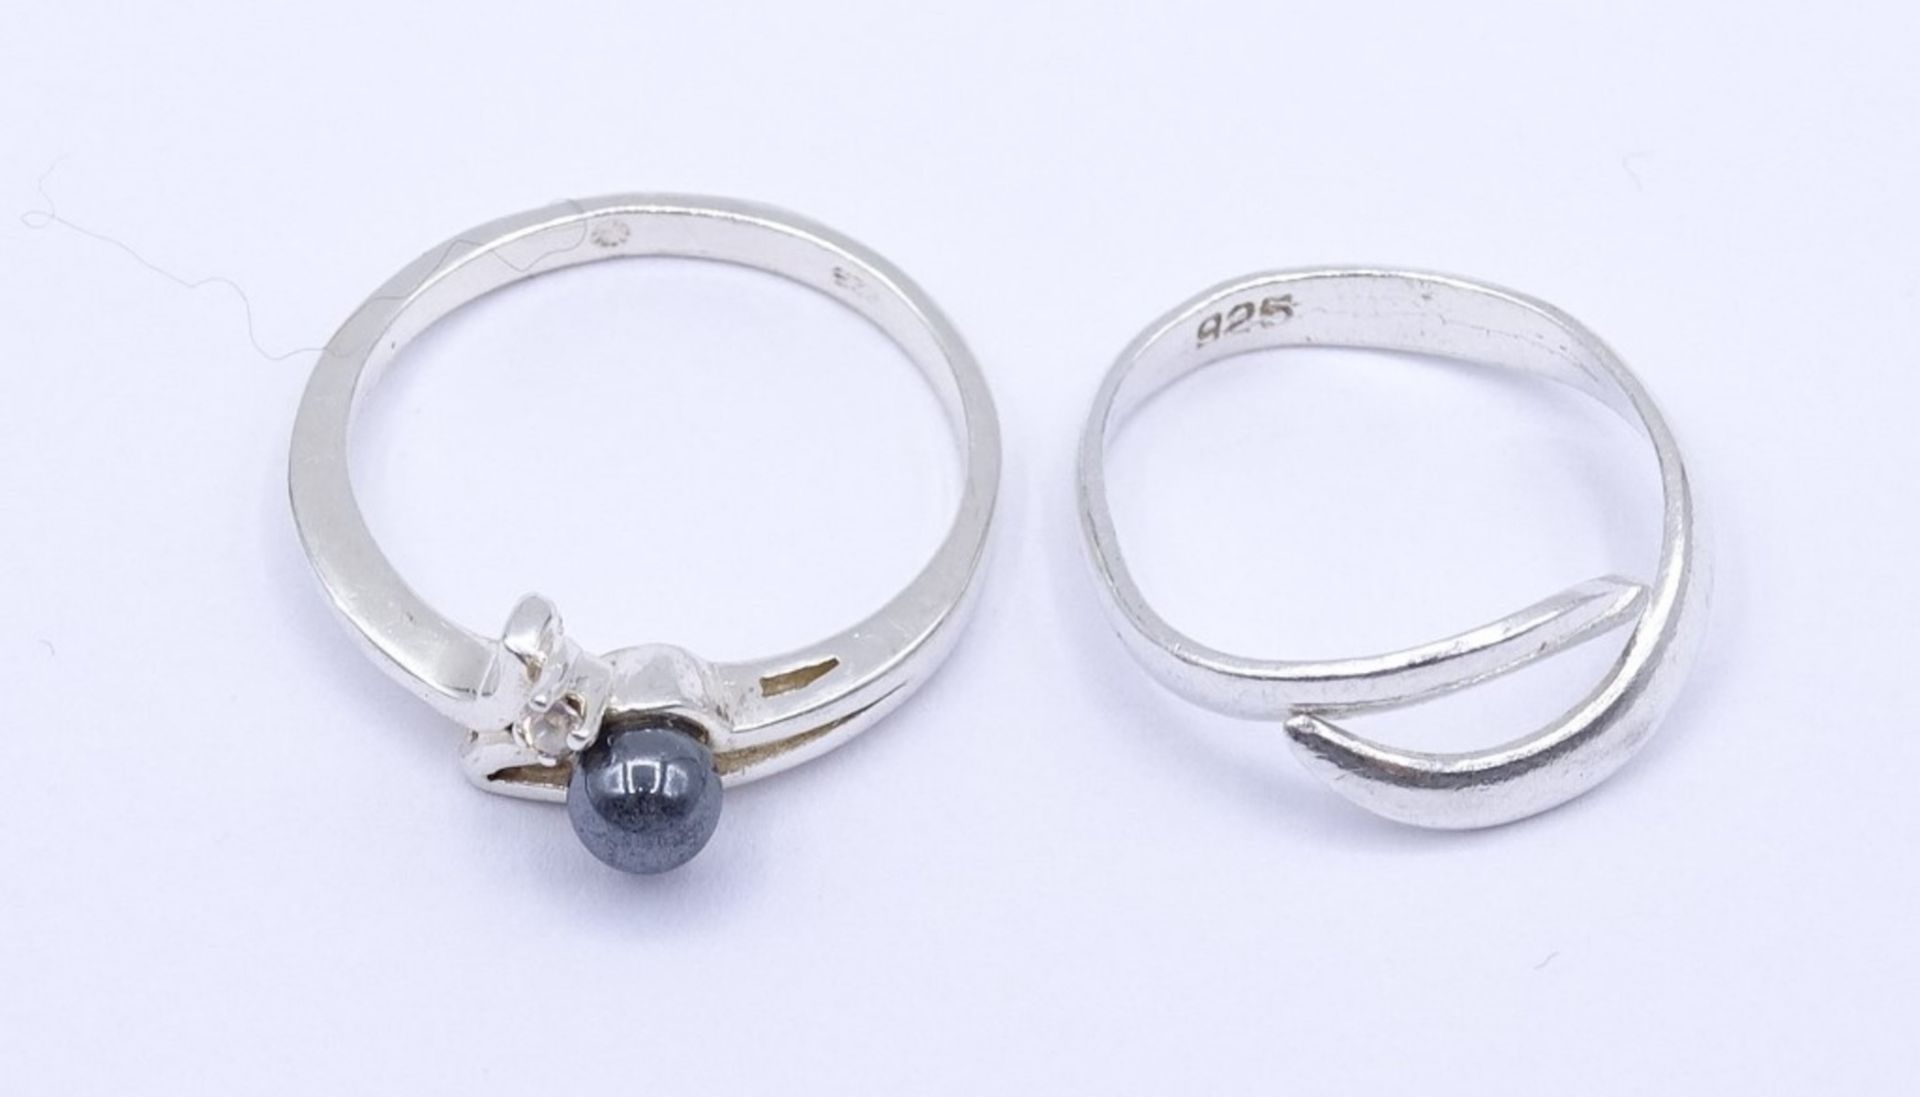 2 Silber Ringe 0.925 mit Perle und einen rund facc.klaren Stein, zus. 5,2 g., RG 62 u. 57 - Image 2 of 2